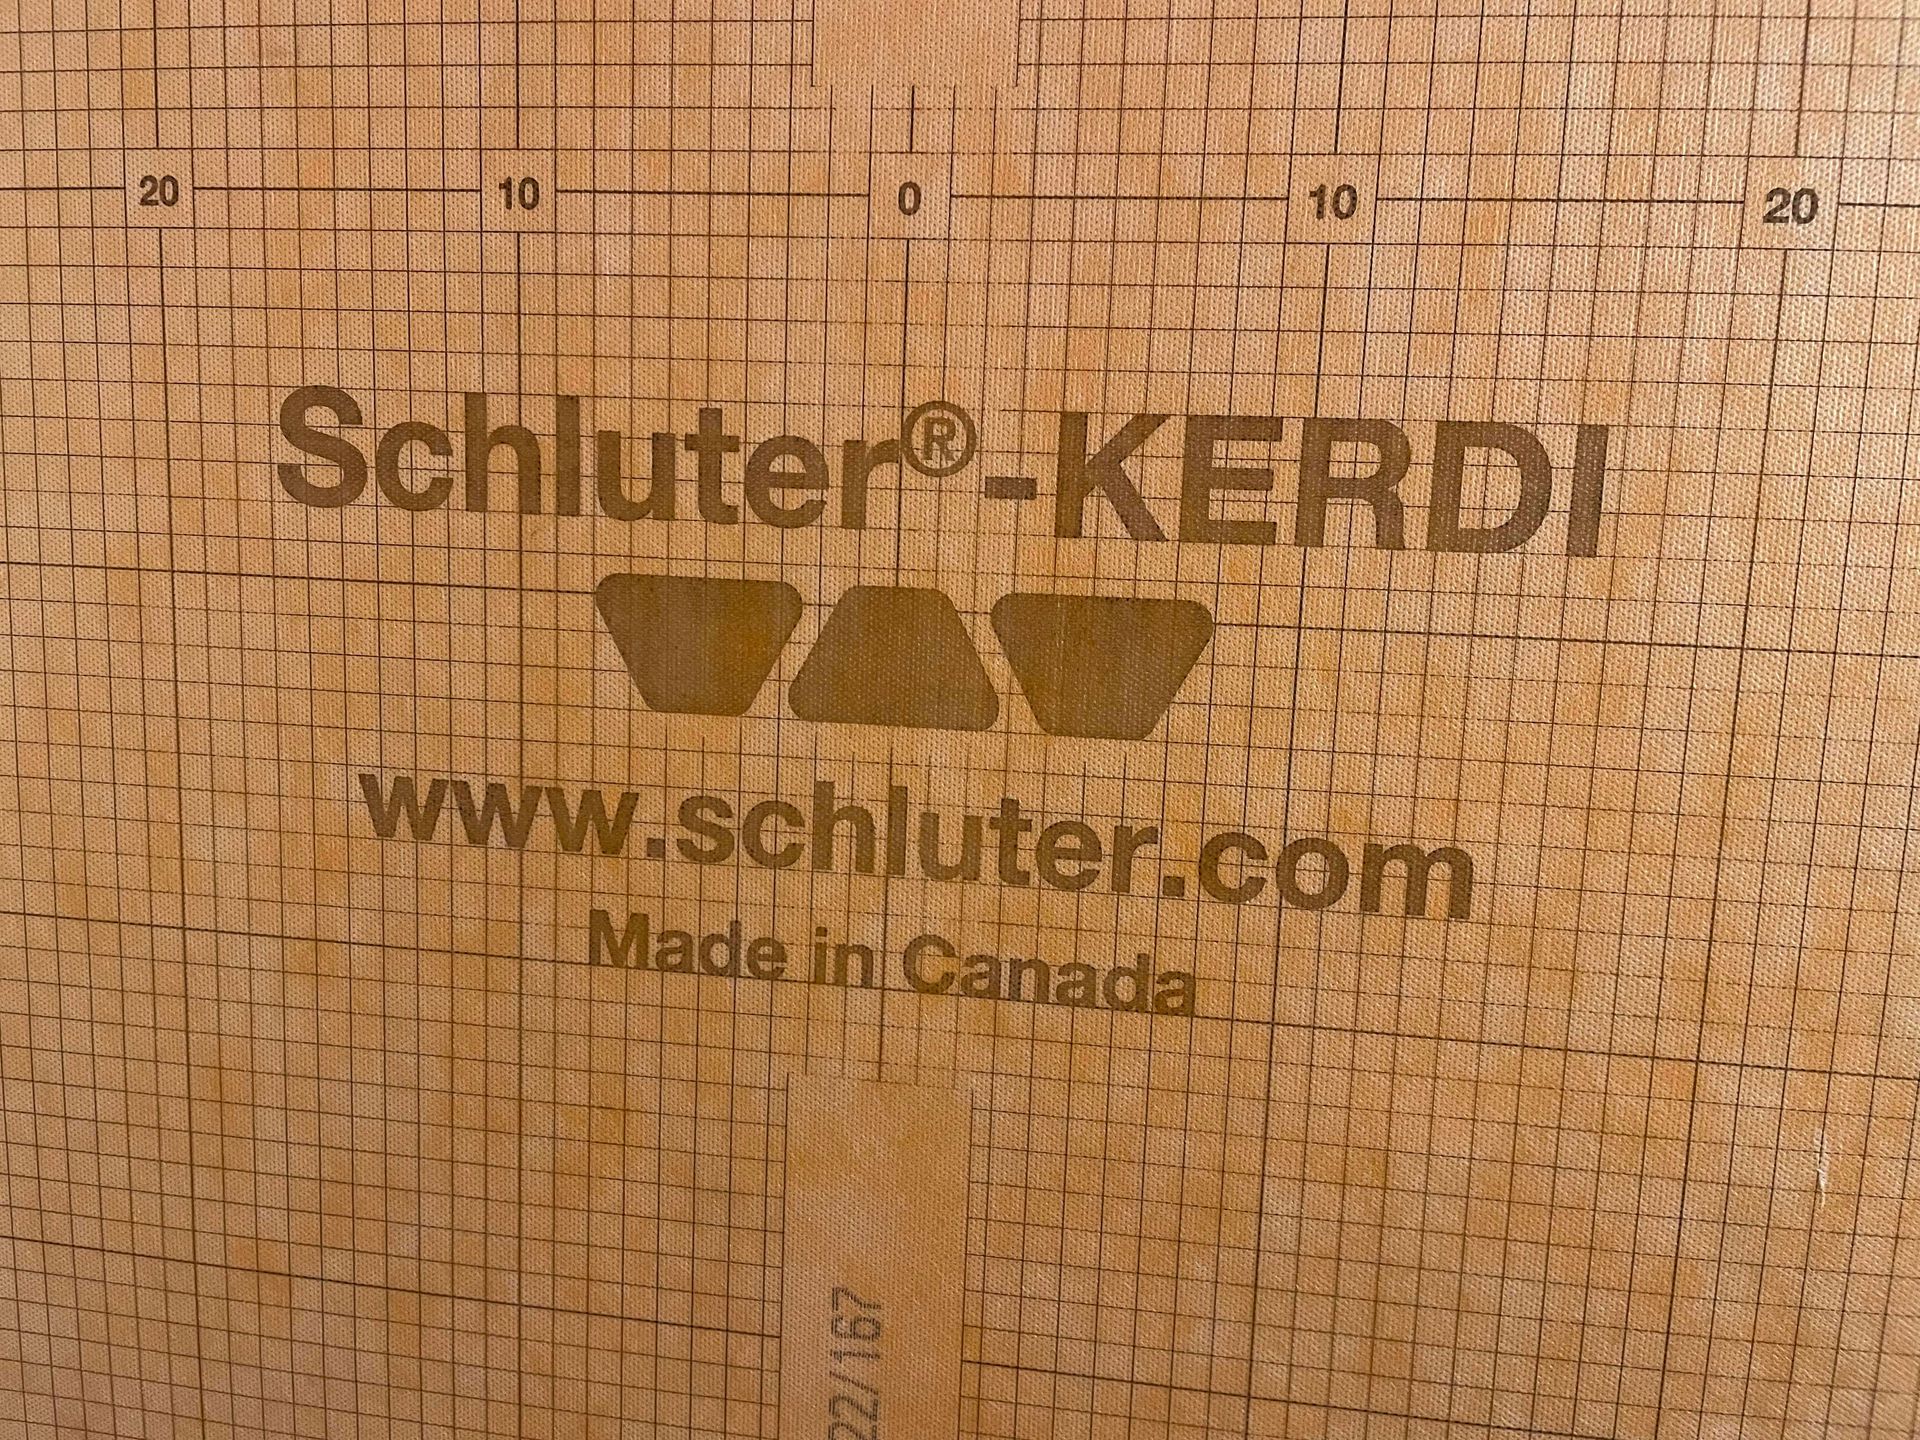 bathroom waterproofing membrane, schluter-kerdi water proofing